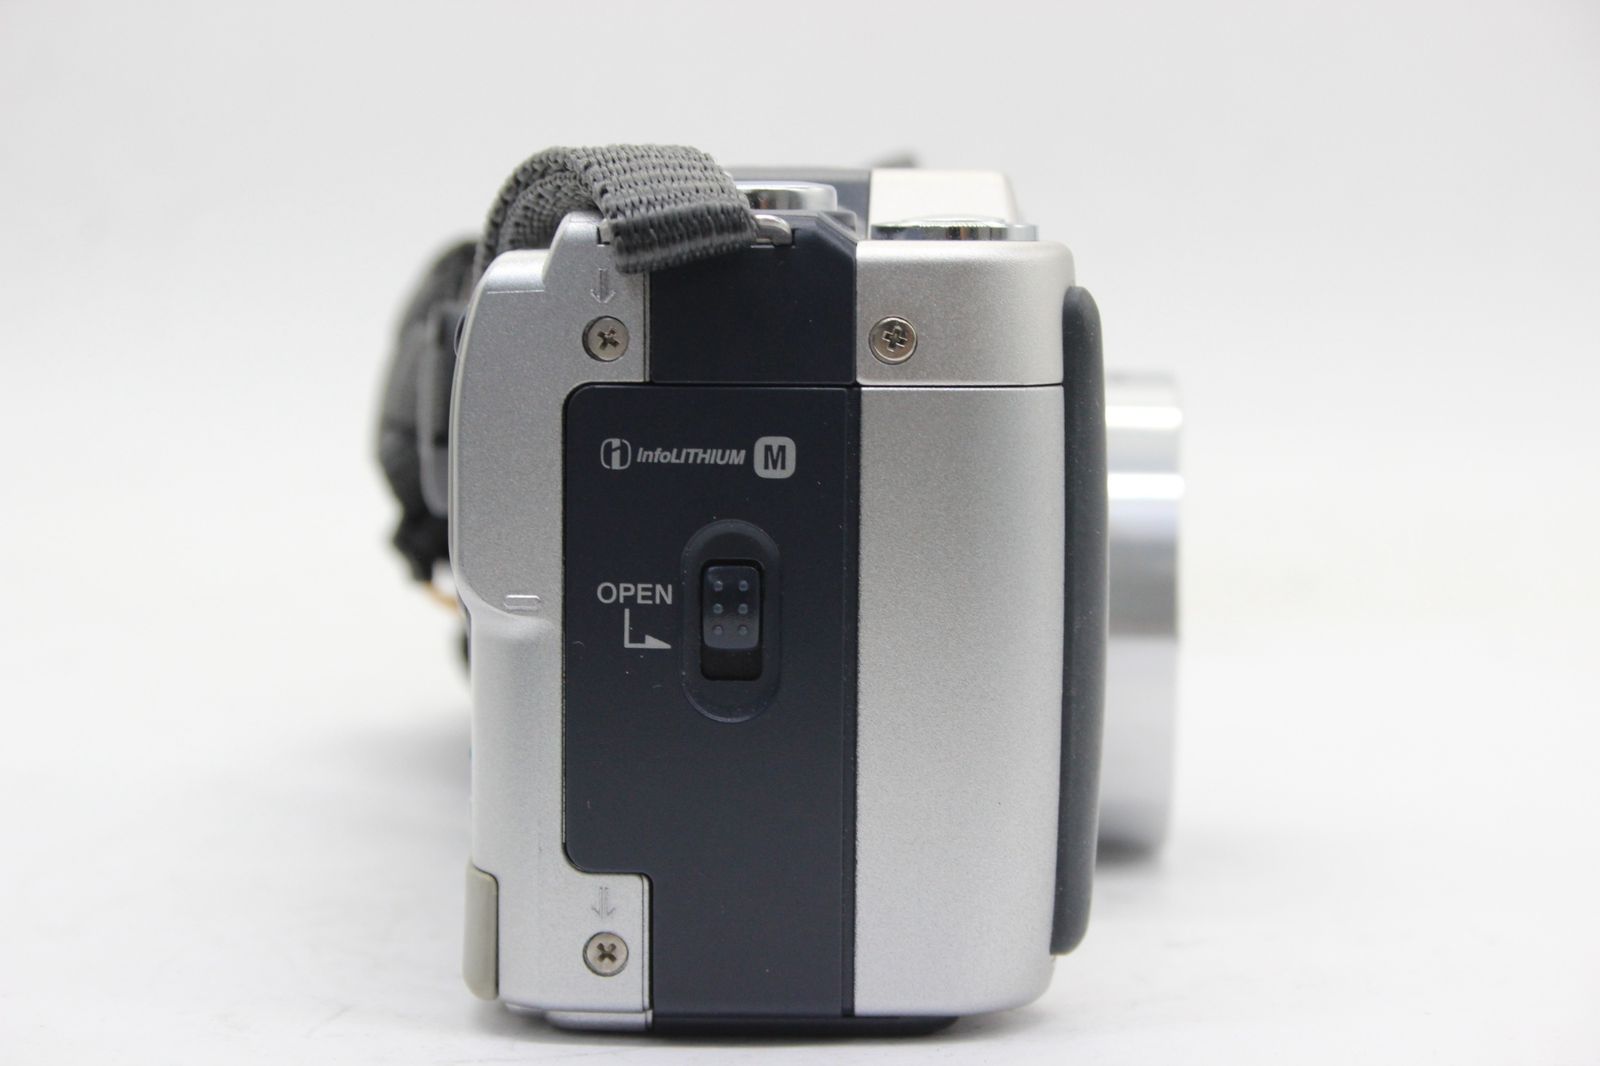 【美品 返品保証】 【元箱付き】ソニー SONY Cyber-shot DSC-S70 6x バッテリー付き コンパクトデジタルカメラ s9556